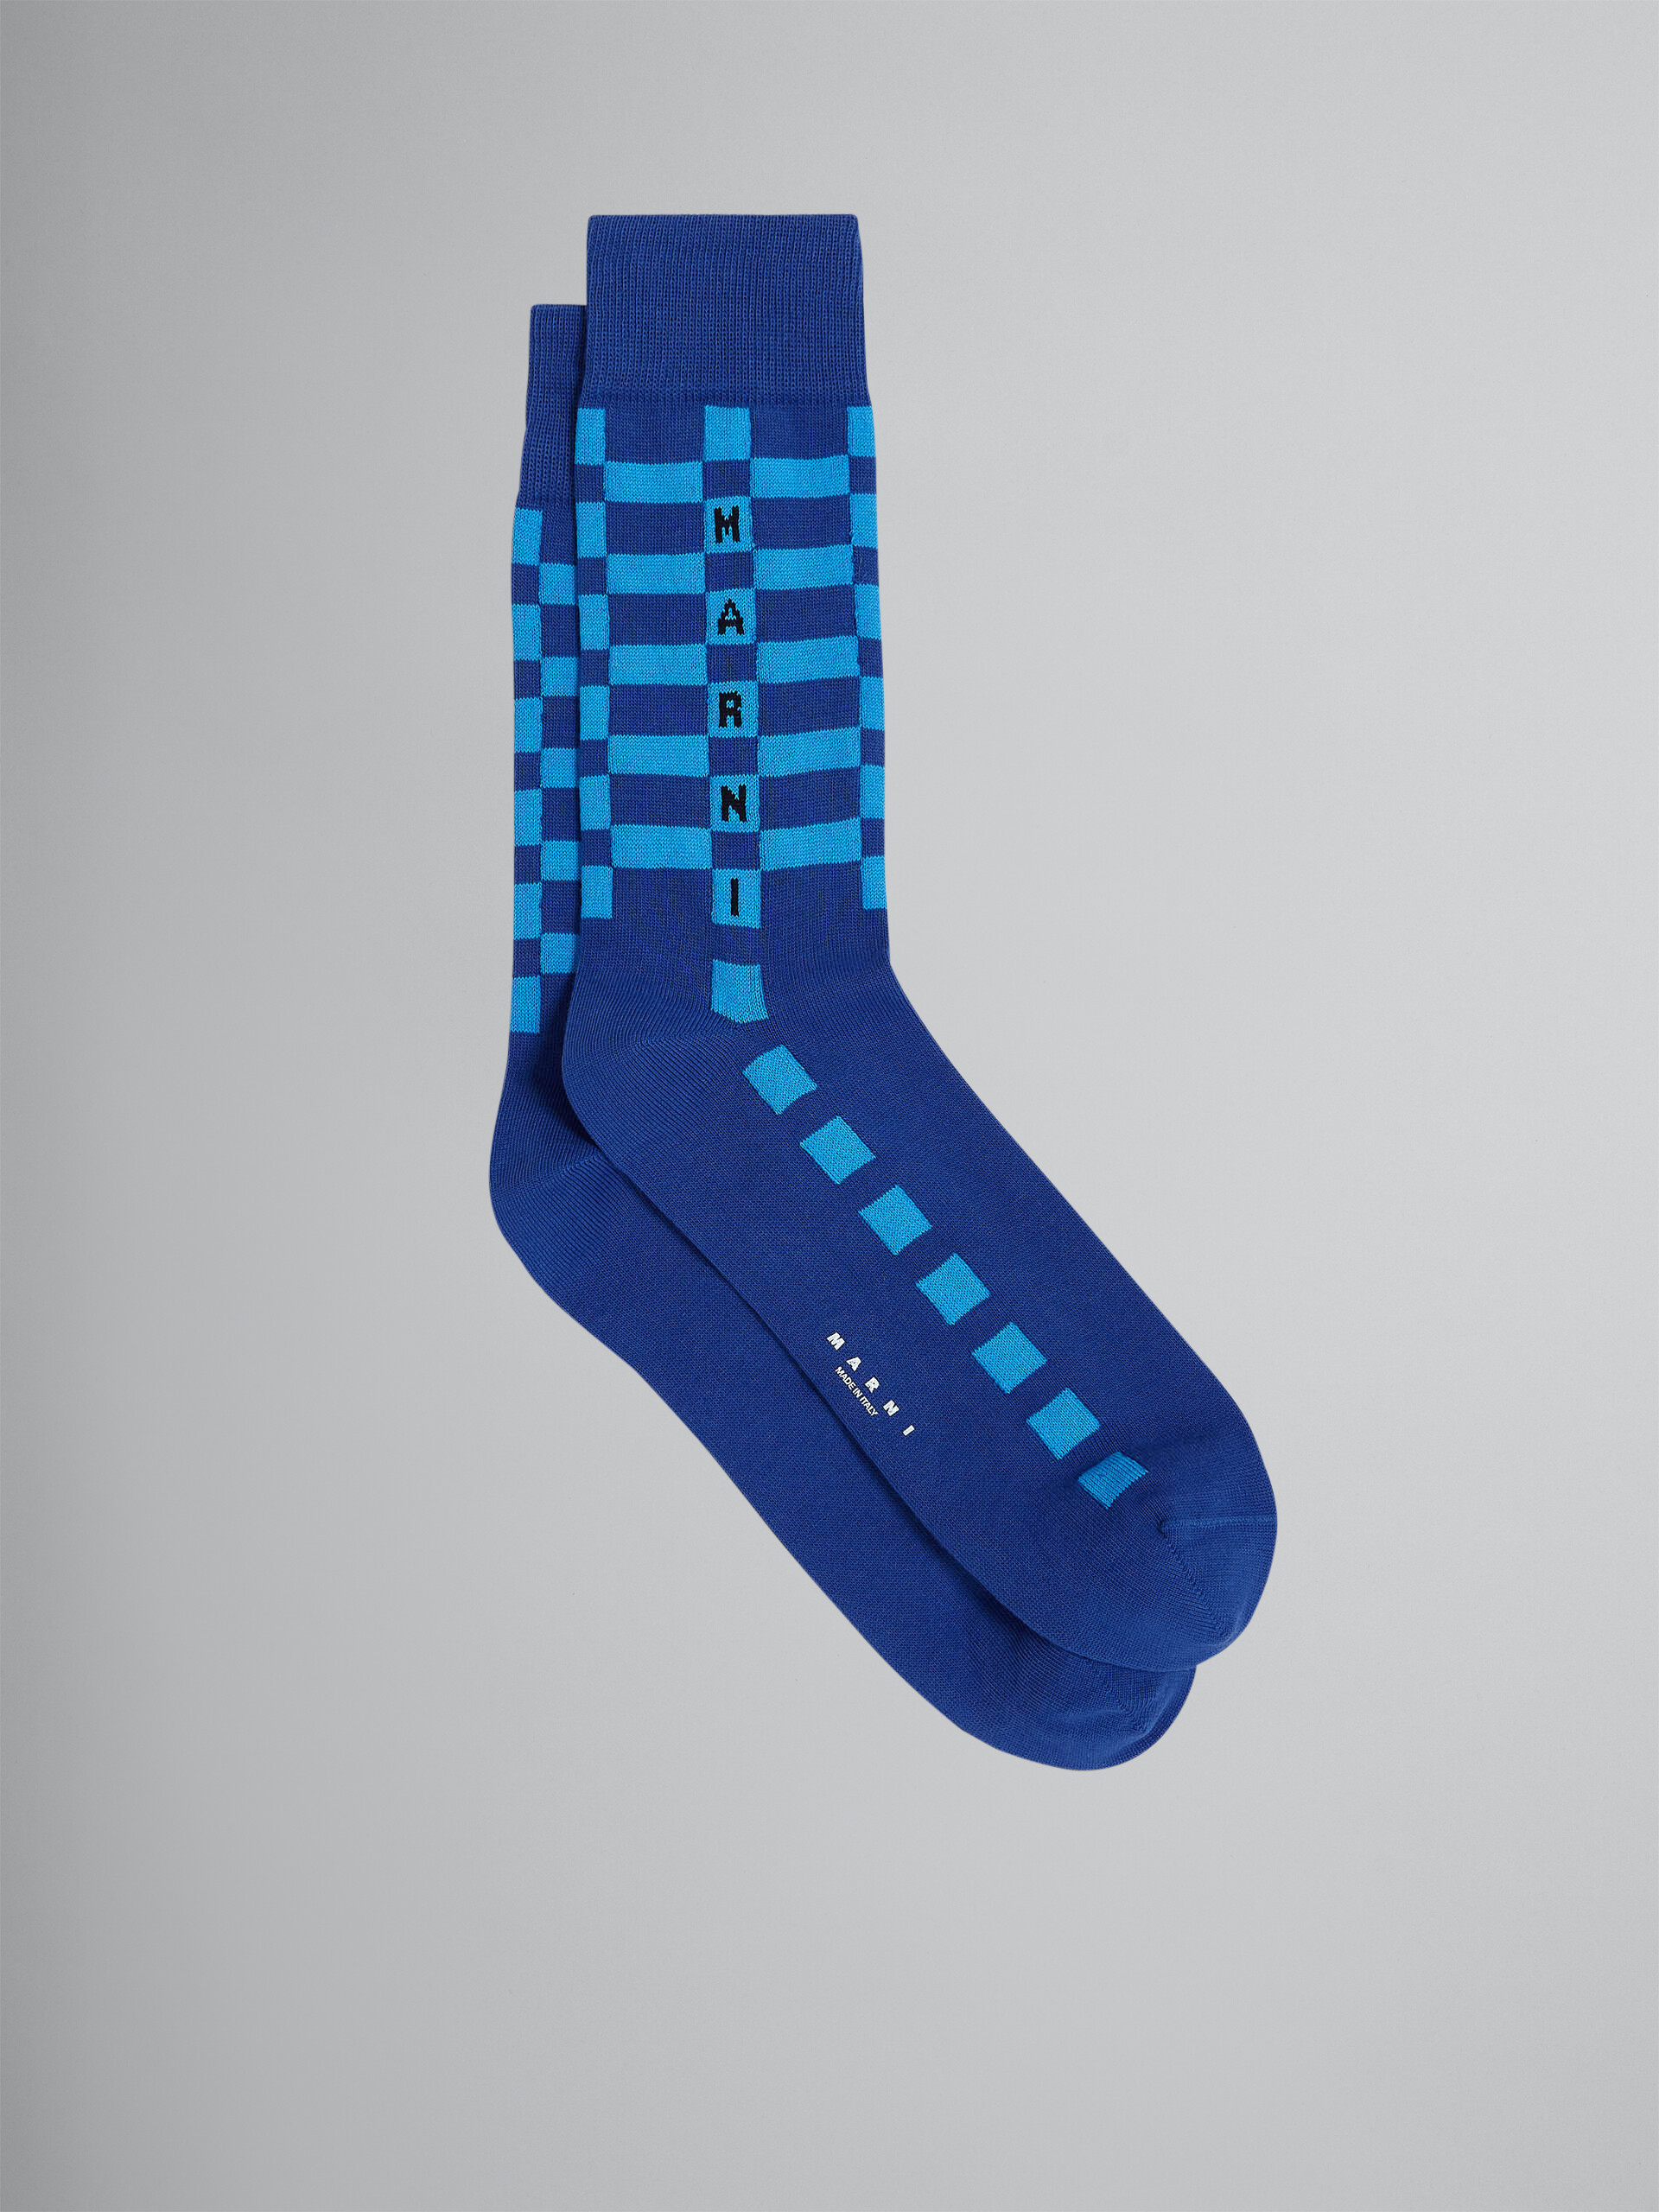 Chaussettes bleues en coton et nylon - Chaussettes - Image 1